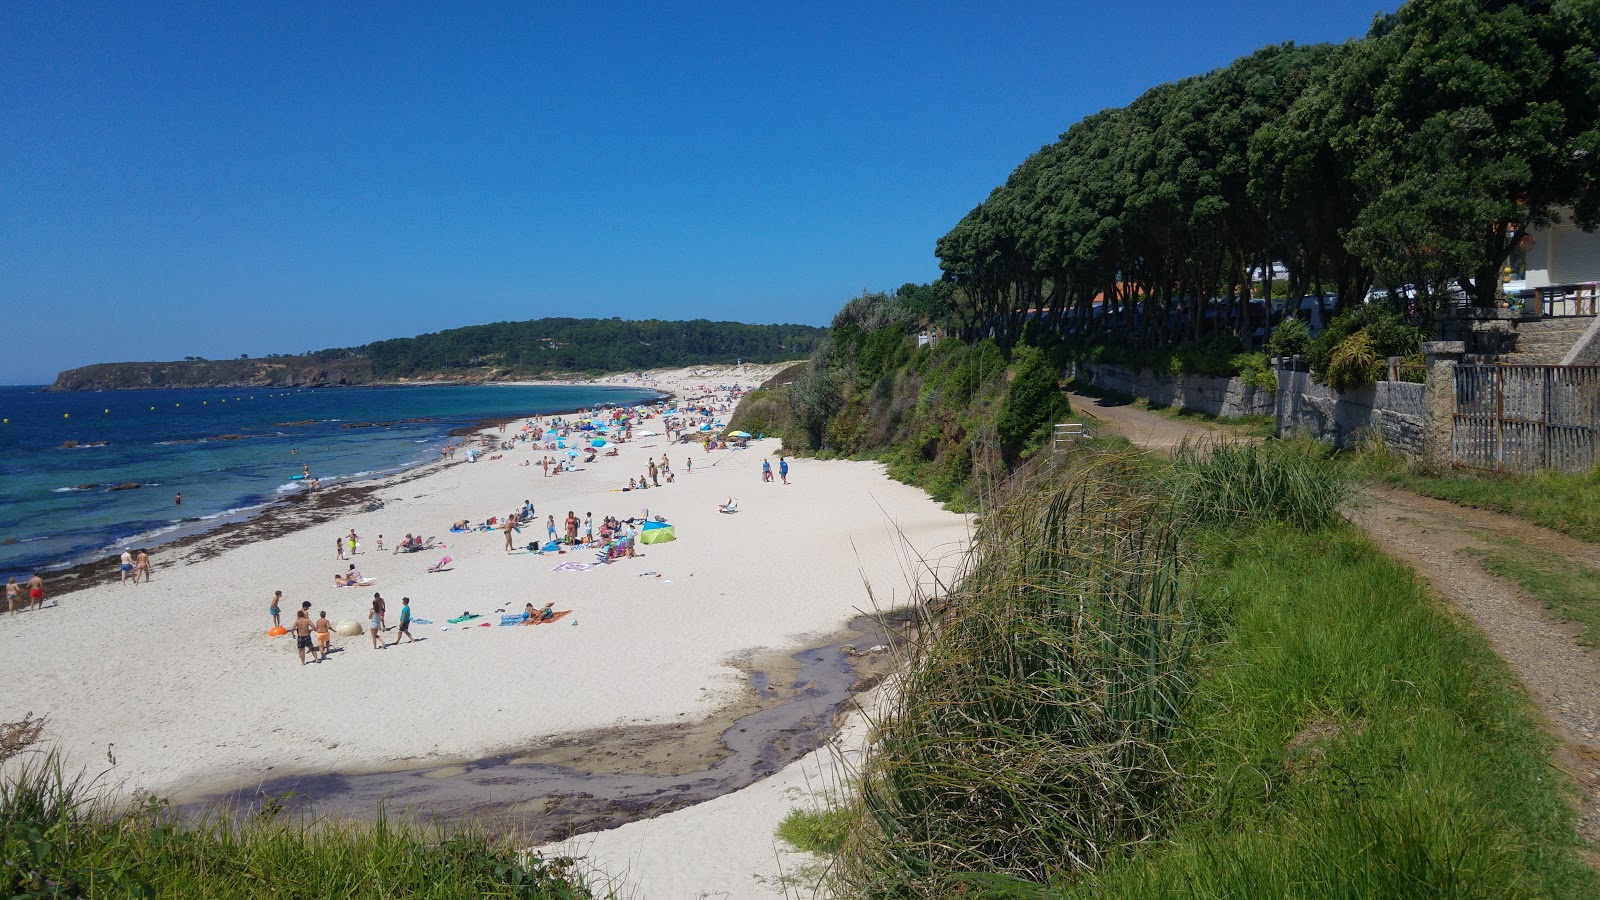 Foto af Pragueira beach - populært sted blandt afslapningskendere